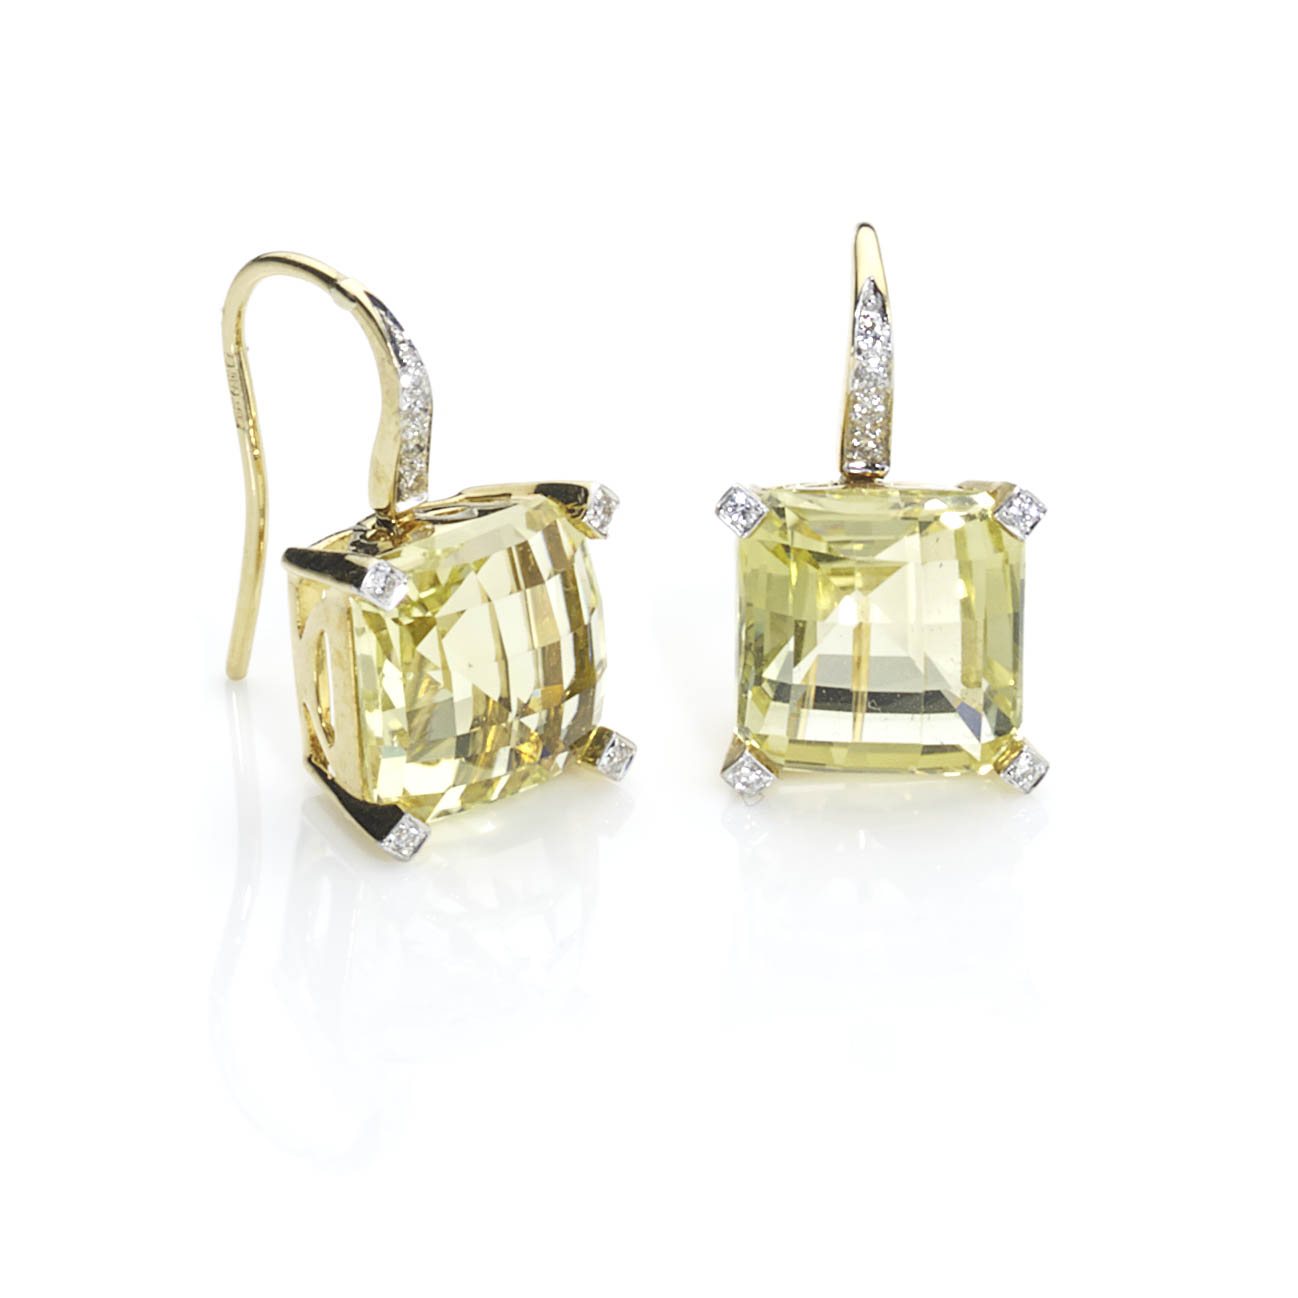 Lemon citrine drop earrings - Jewellery Discovery